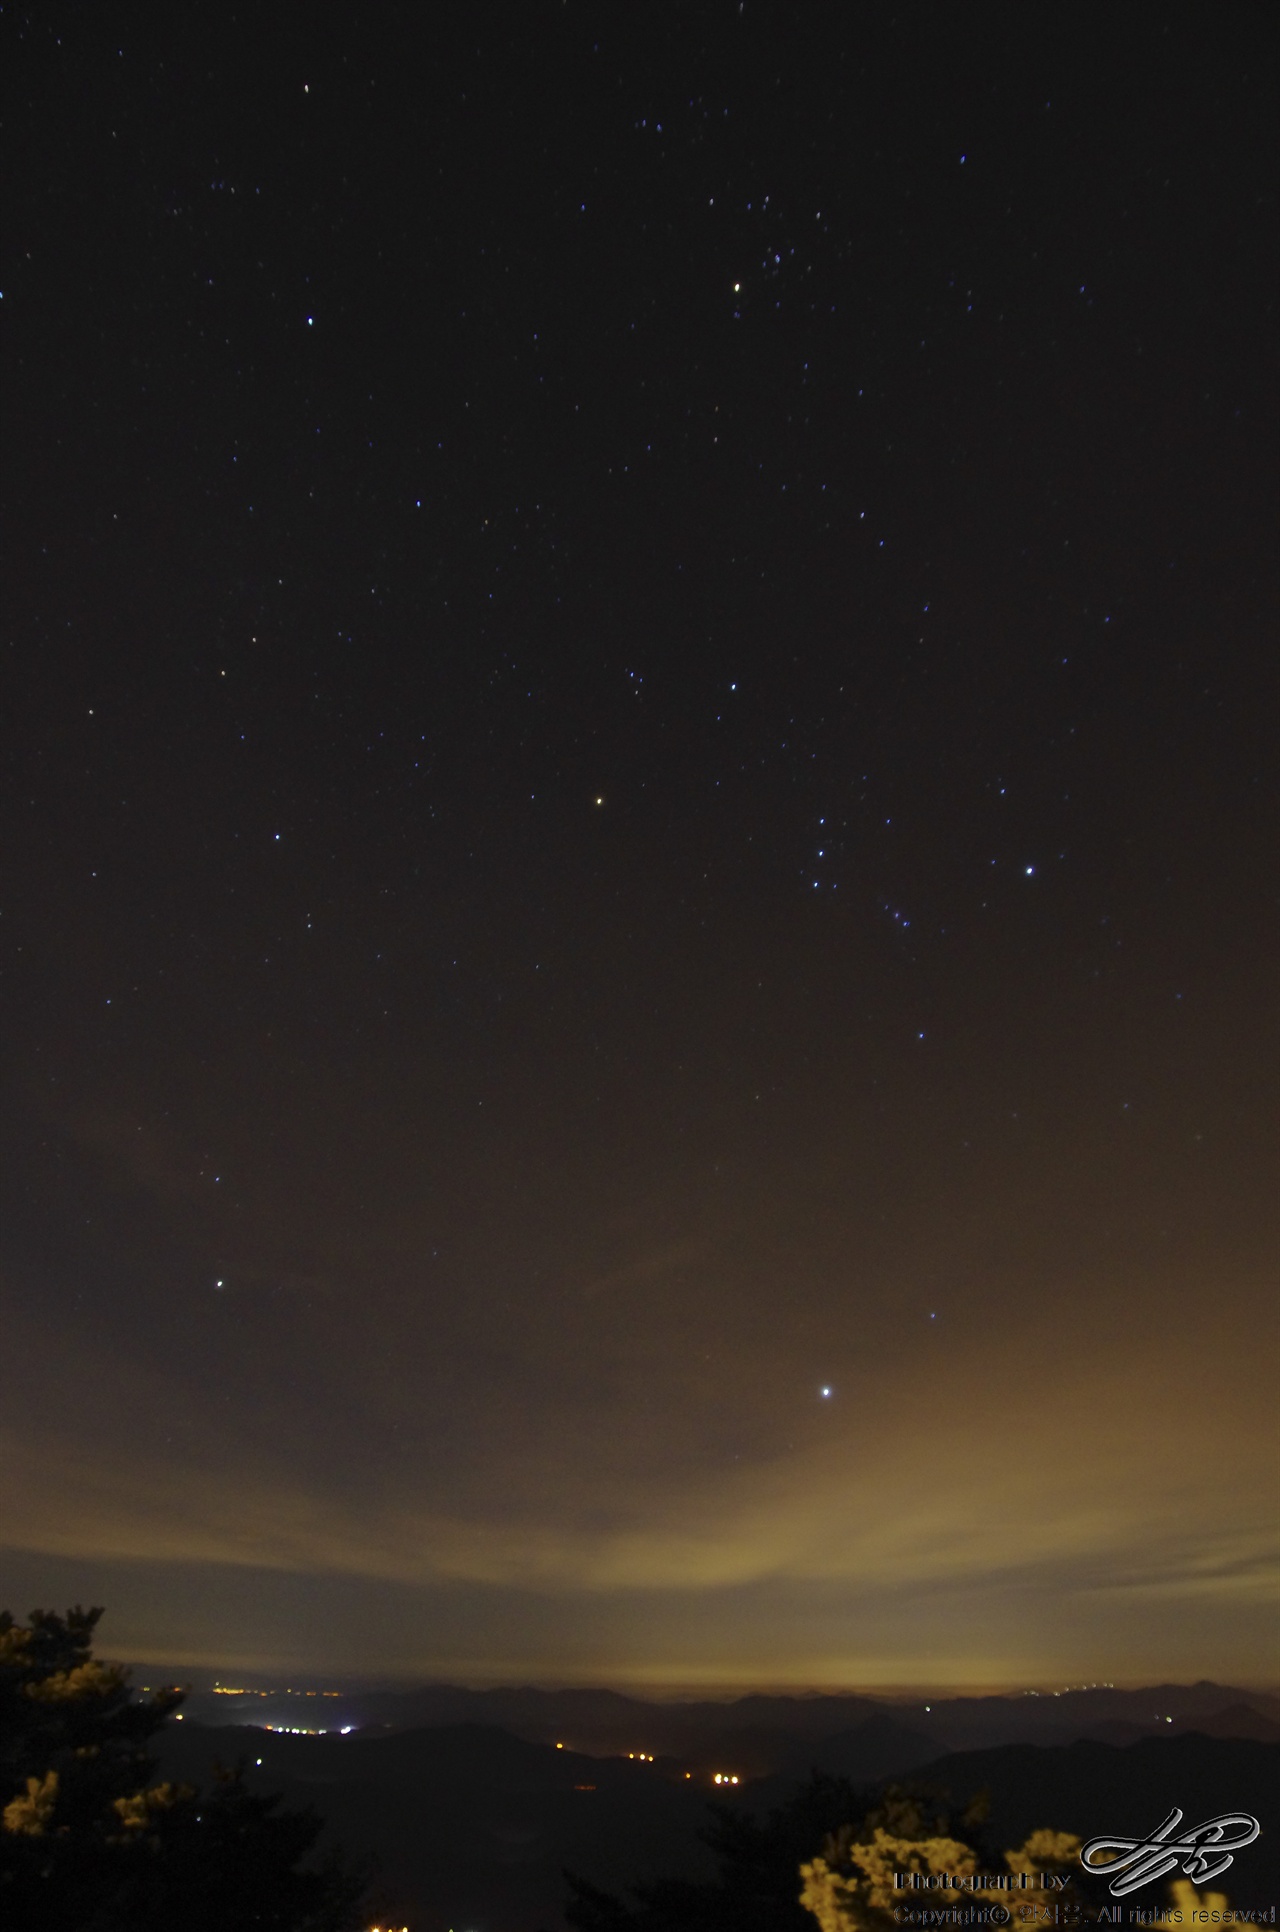 감악산의 밤하늘 (K5)필름으로 담기 전에 마침 차에 Dslr이 있어서 테스트 삼아 찍은 점상 사진